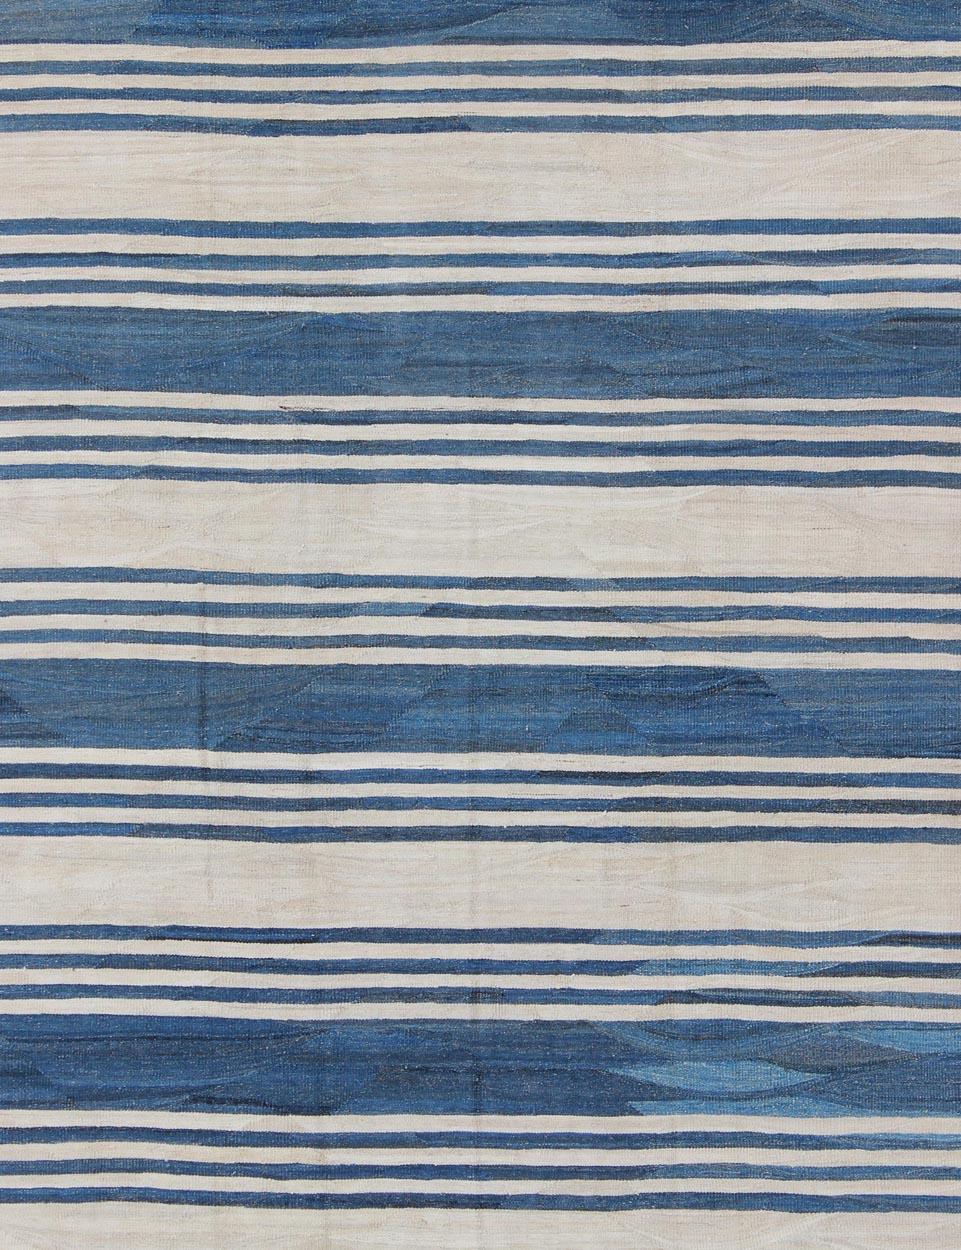 Afghan Blue Striped Design Flat-Weave Kilim Rug Versatile for Interiors